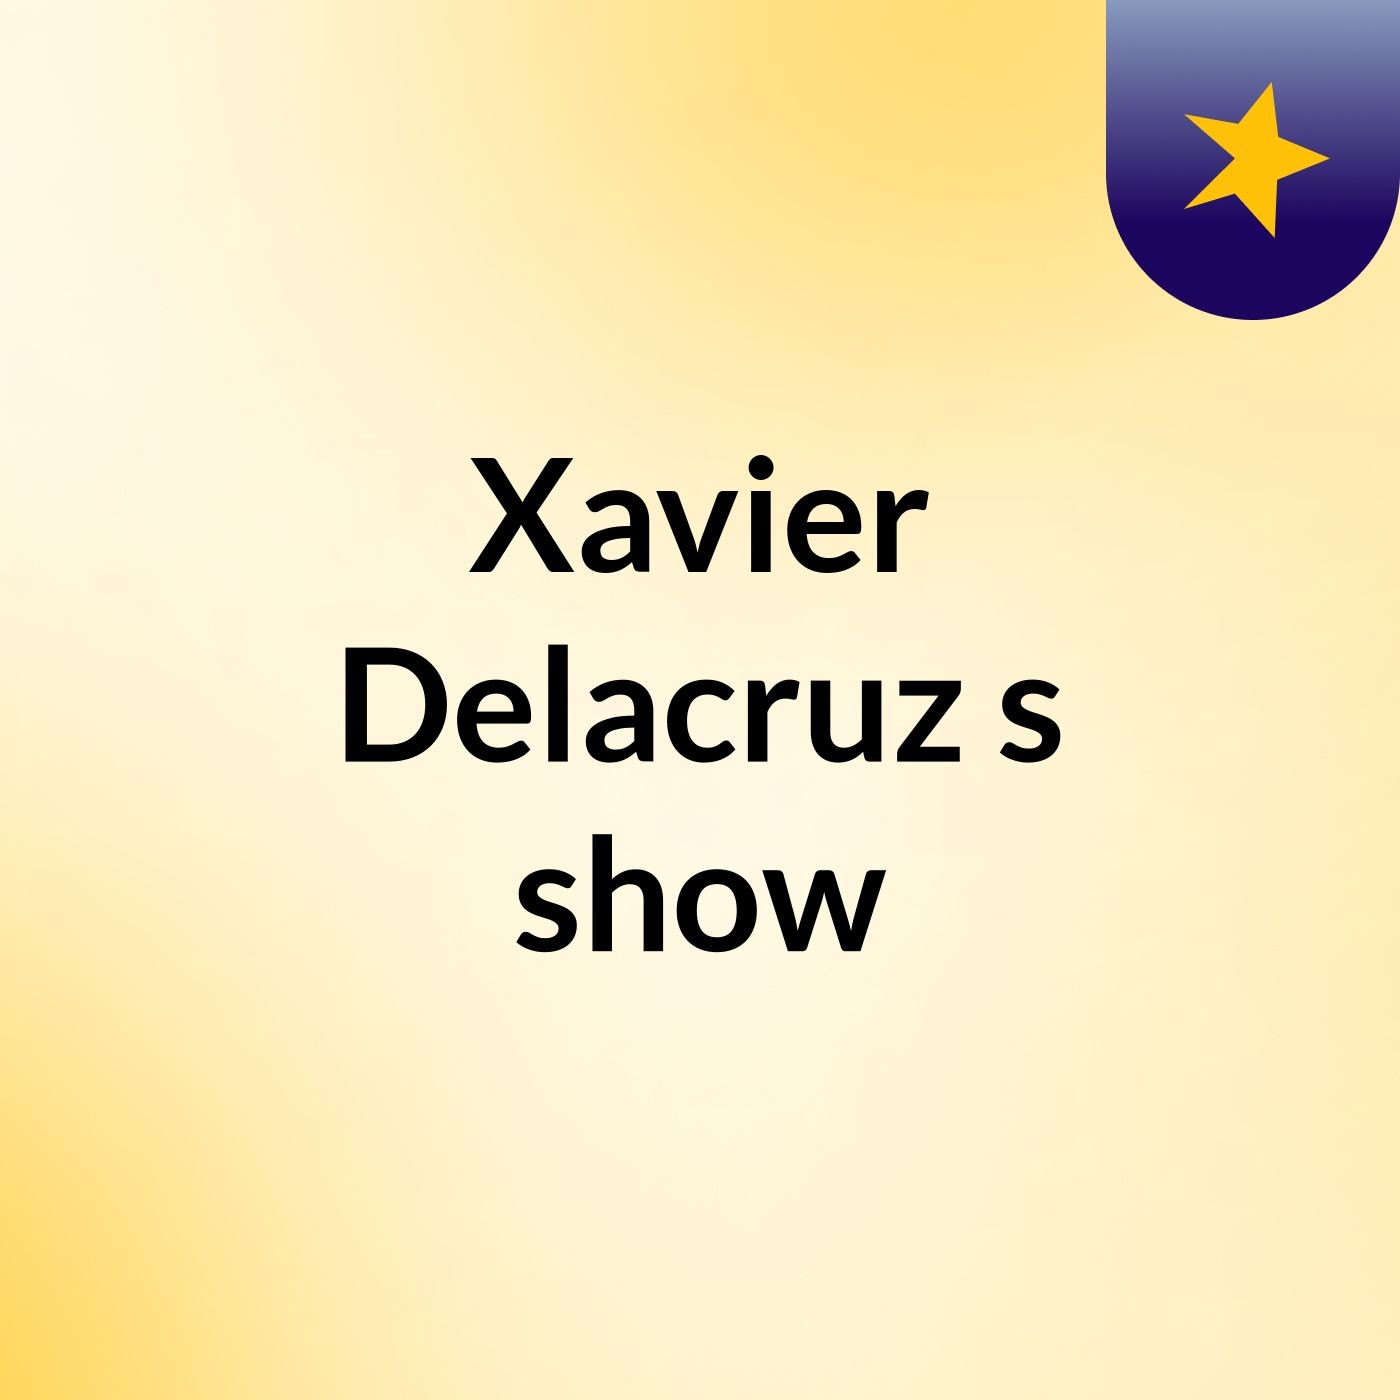 Episode 5 - Xavier Delacruz's show